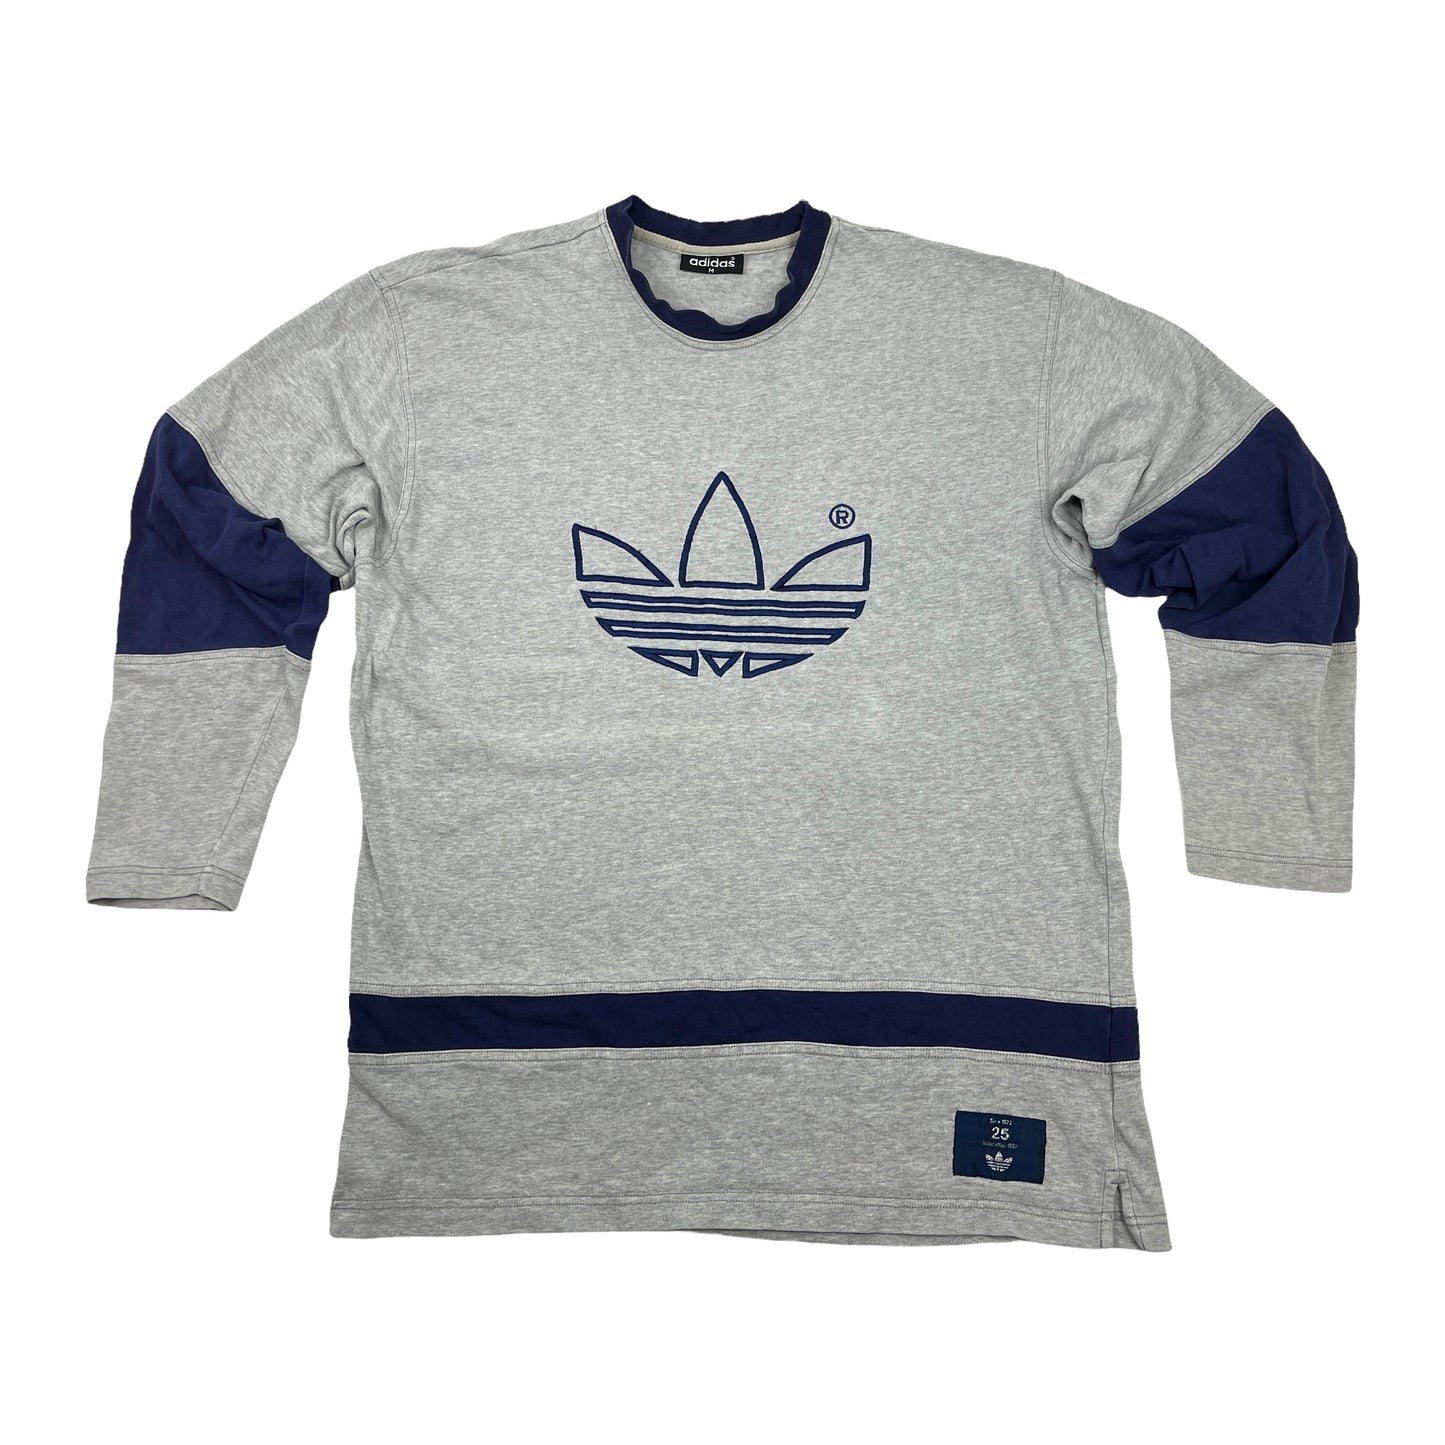 0882 Adidas Vintage 90s Trefoil Sweater